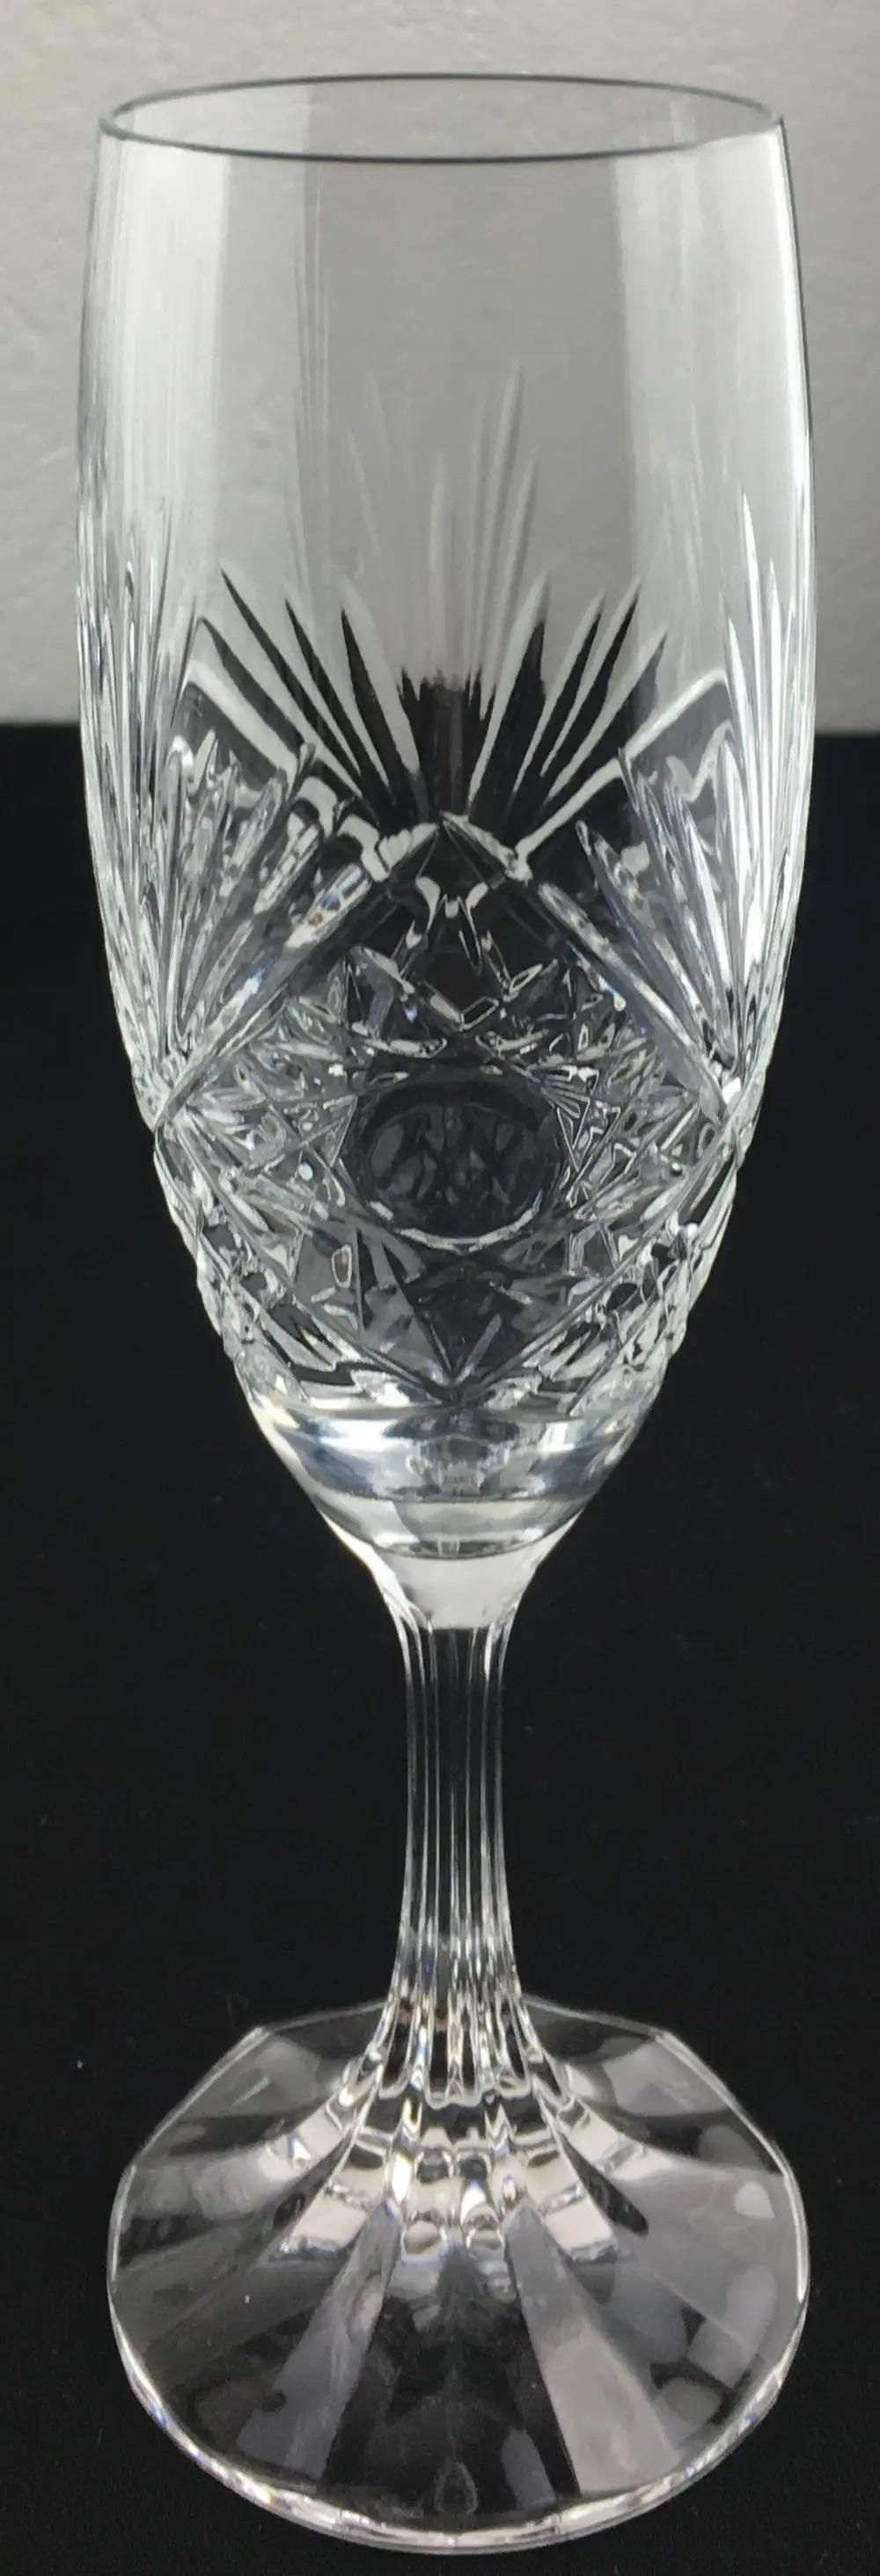 Eine wirklich elegante und feine Qualität Baccarat Kristall Champagnerflöten, Satz von 8 noch verfügbar. Schöne Details, die jeden Tisch aufwerten und Ihre Gäste begeistern. Entworfen von Valery Klein.

Jedes Glas trägt die geätzte Marke Baccarat